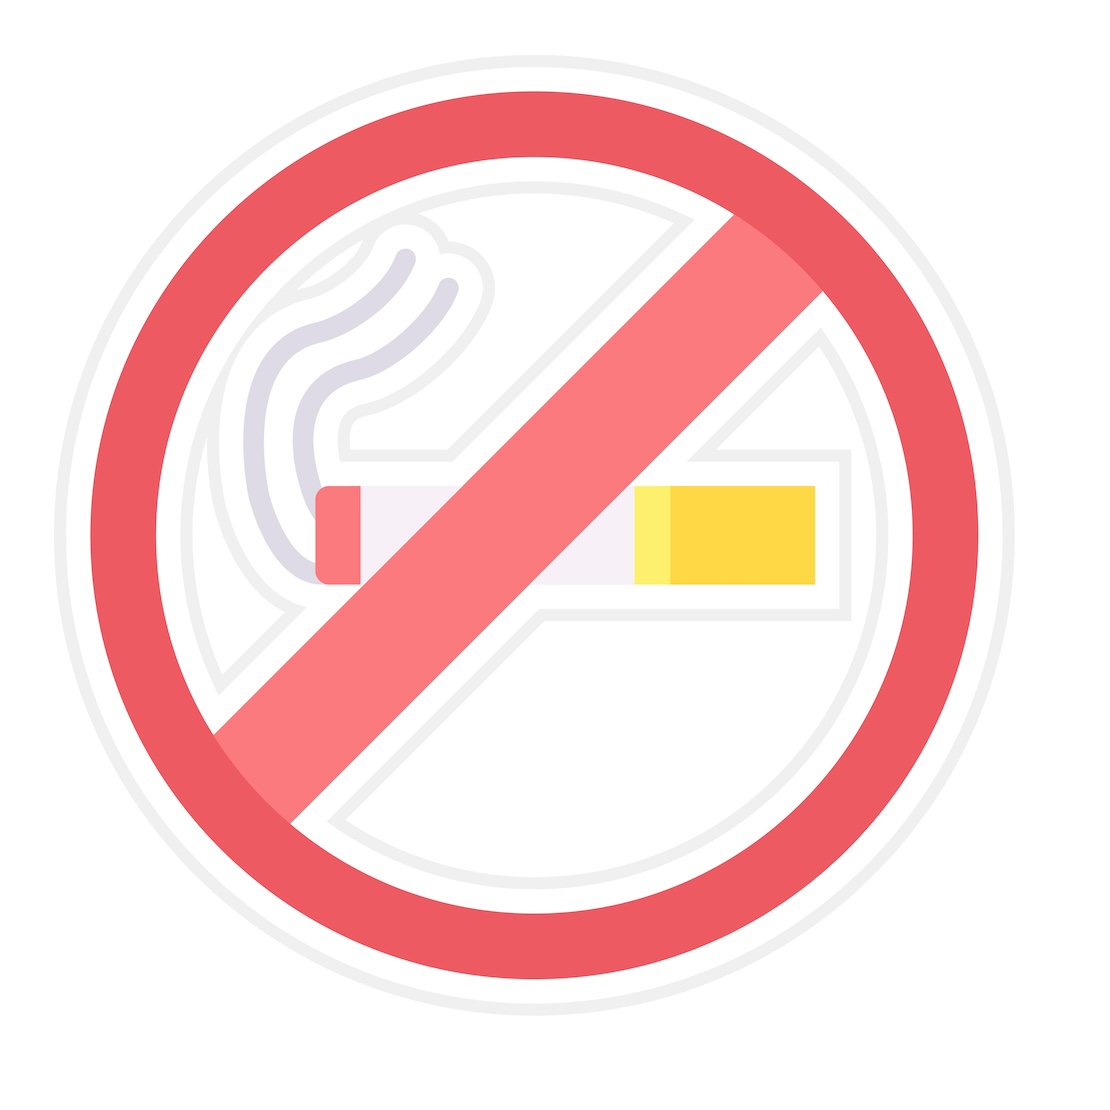 illustratie van een sigaret in een rode cirkel om te stoppen met roken